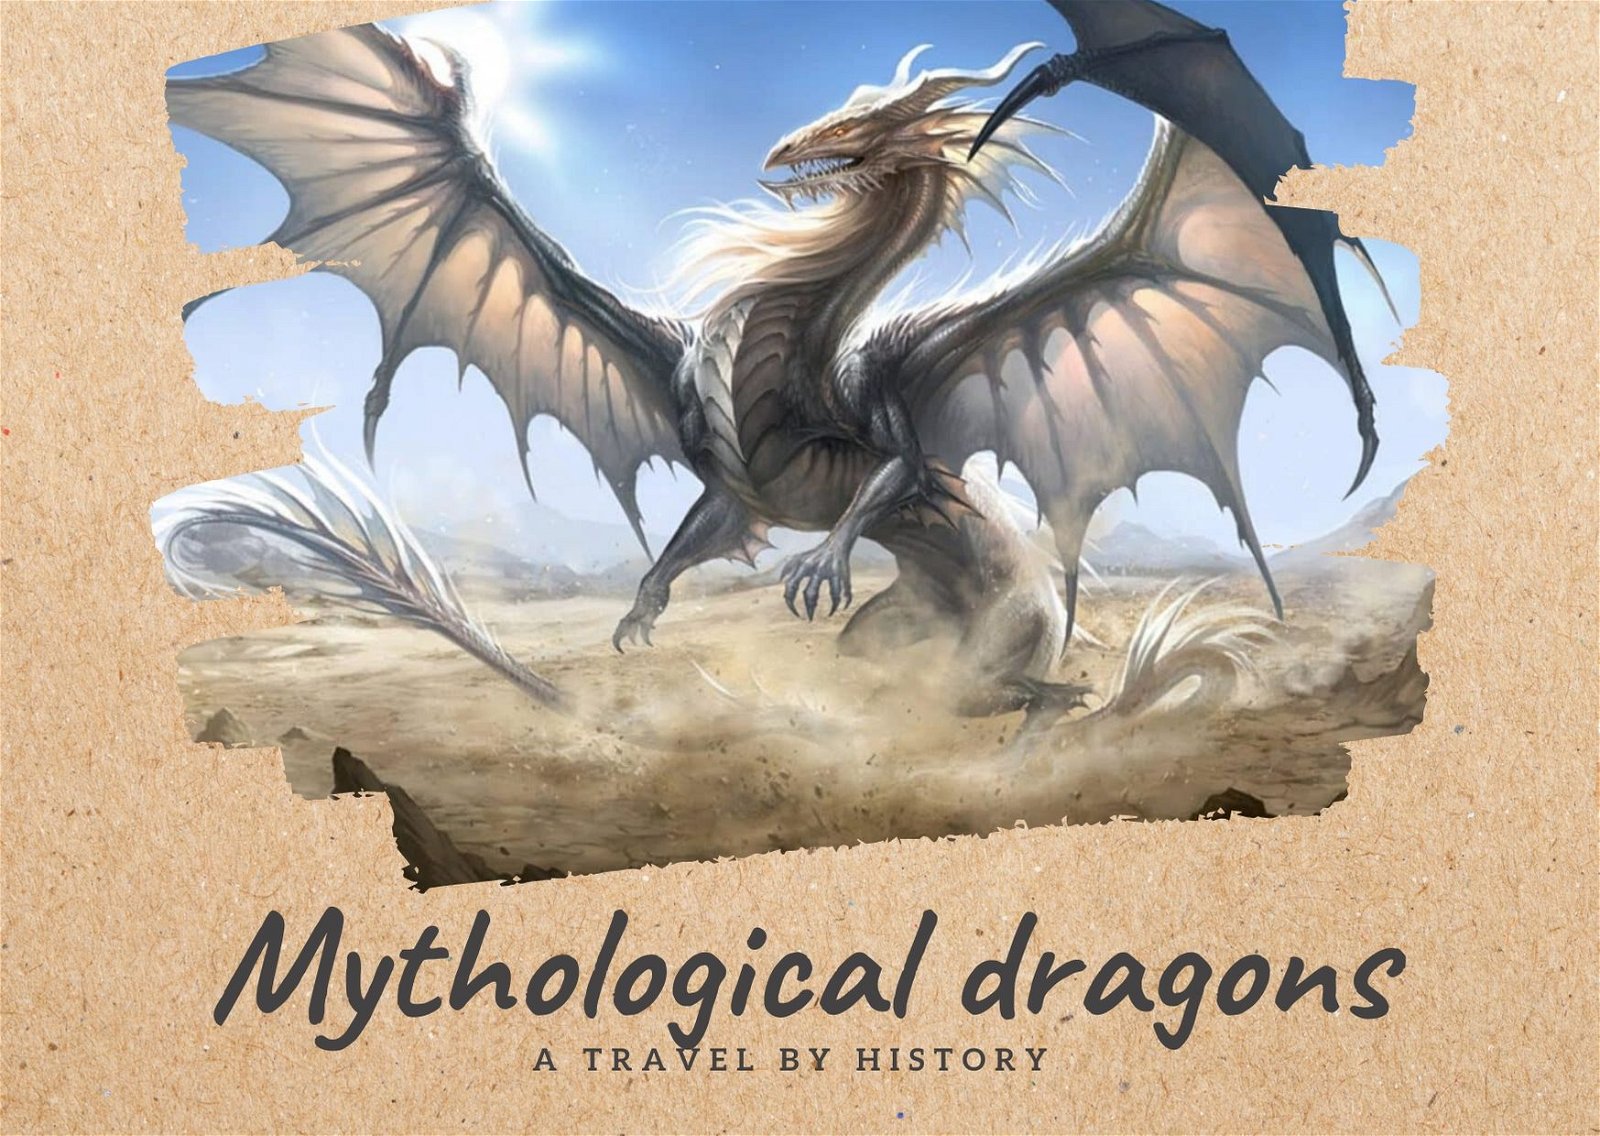 Mythological Dragons